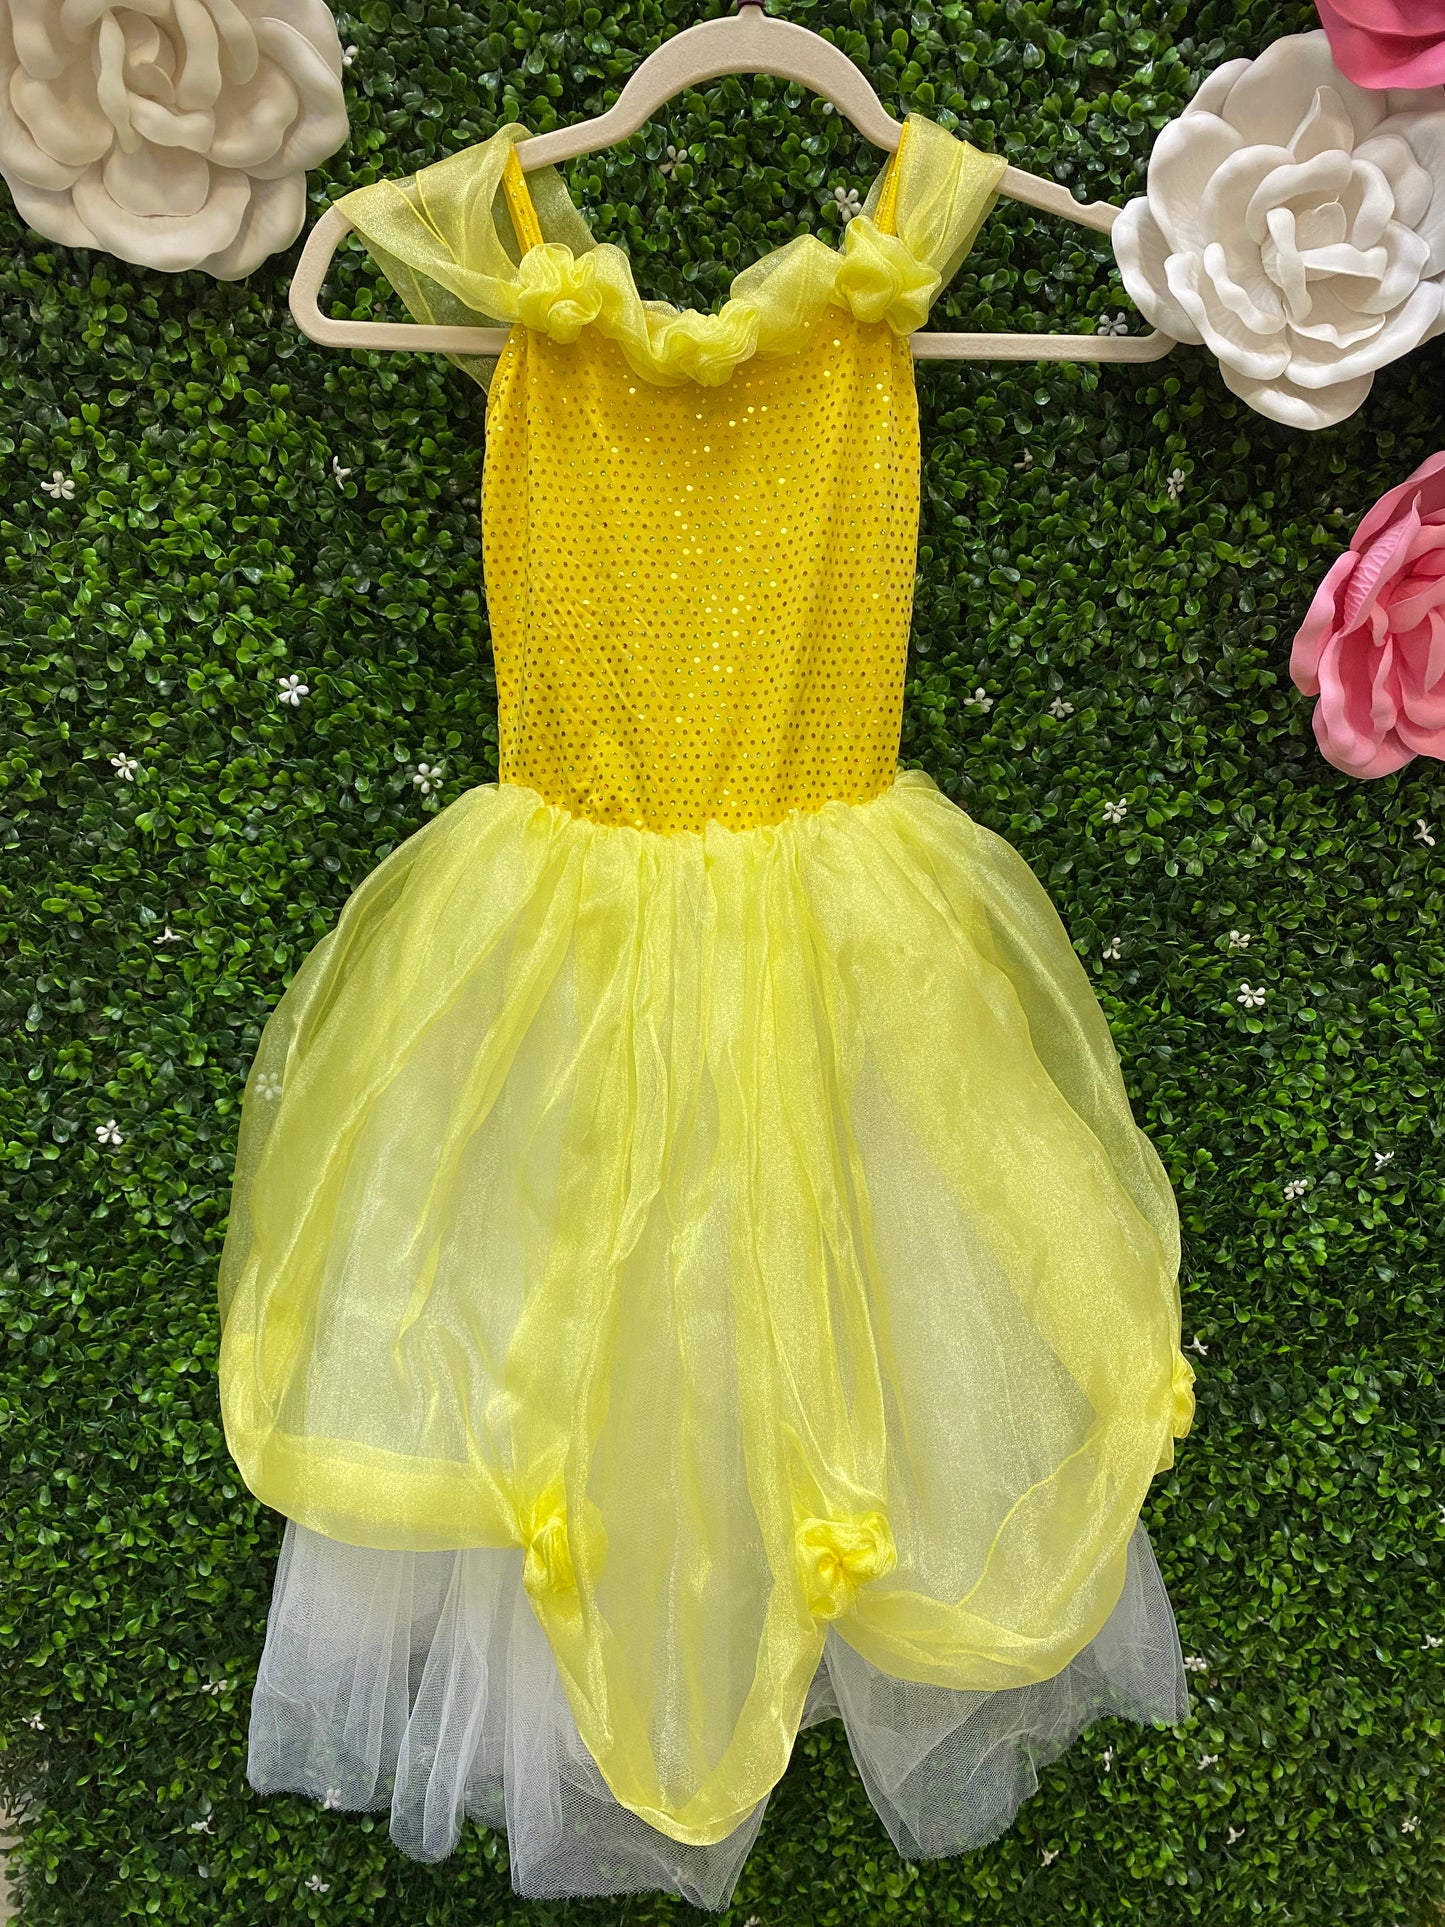 Child Small Yellow Polka Dot Dress